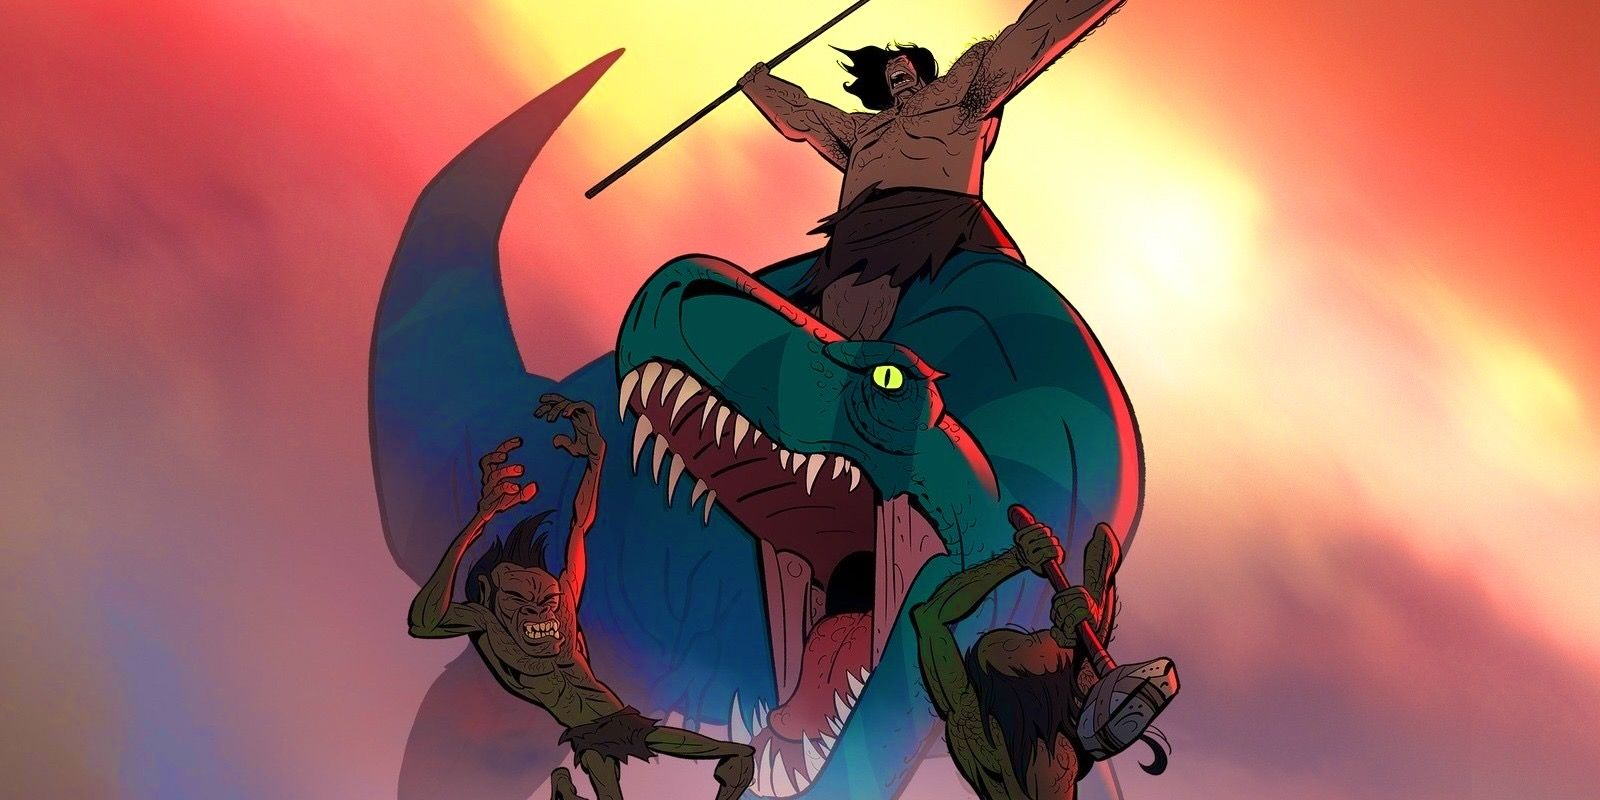 Lança montada em seu T. Rex chamado Fang enquanto eles lutam contra dois hominídeos.